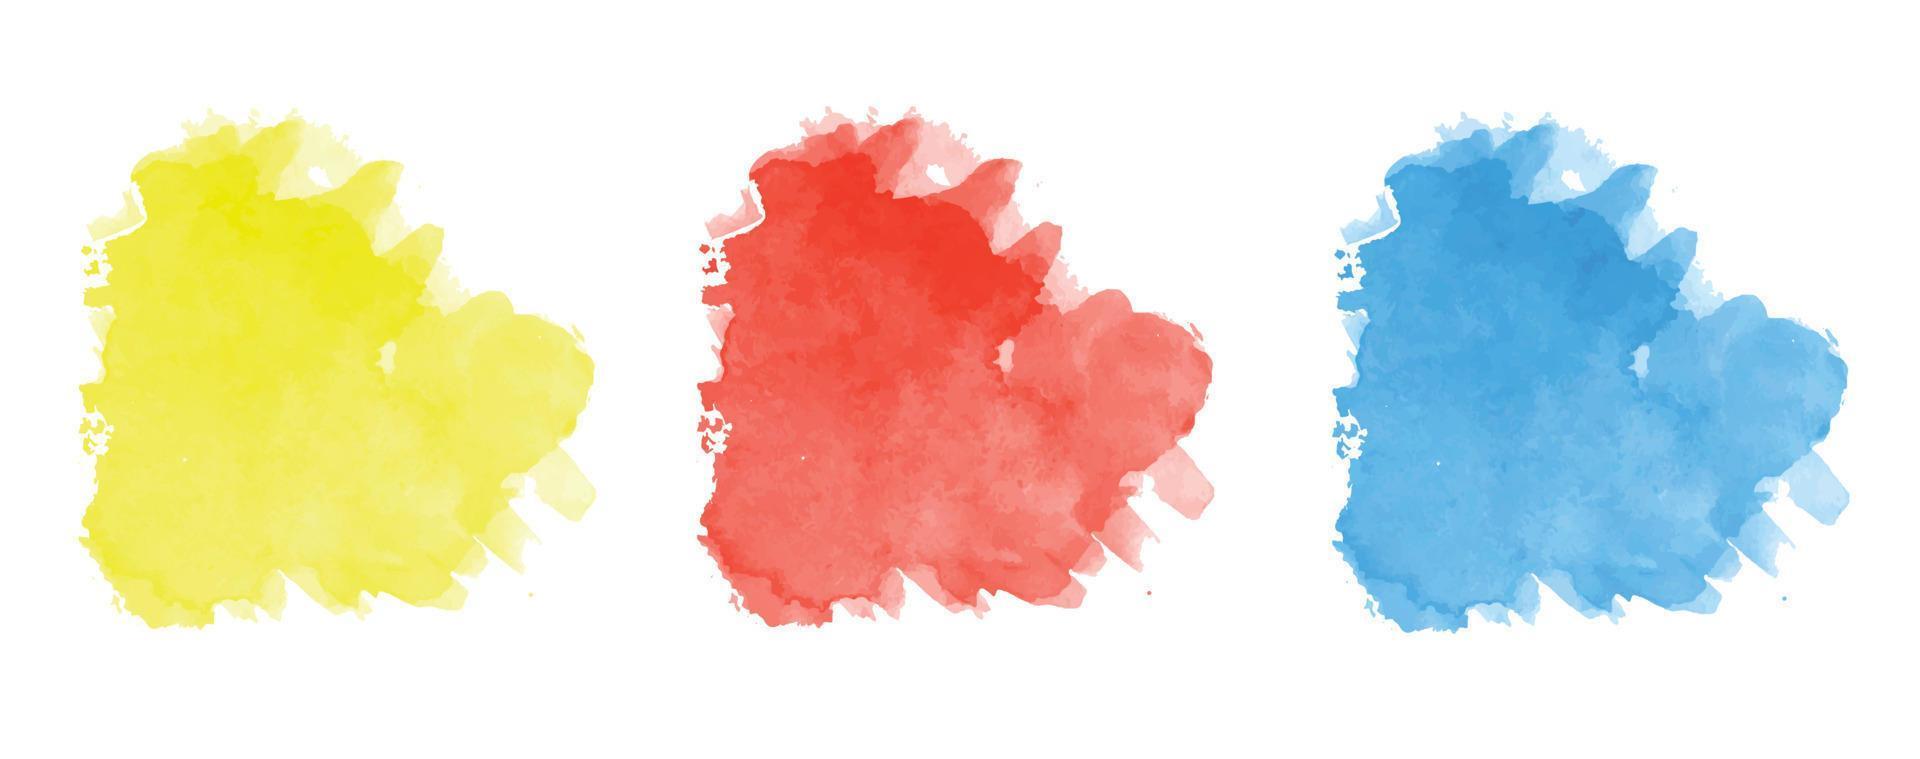 design astratto moderno dipinto a mano con etichetta macchia acquerello pennellata blu, gialla, rossa nuvola, isolata su bianco. vettore utilizzato come carta di design decorativo, banner, poster, copertina, brochure